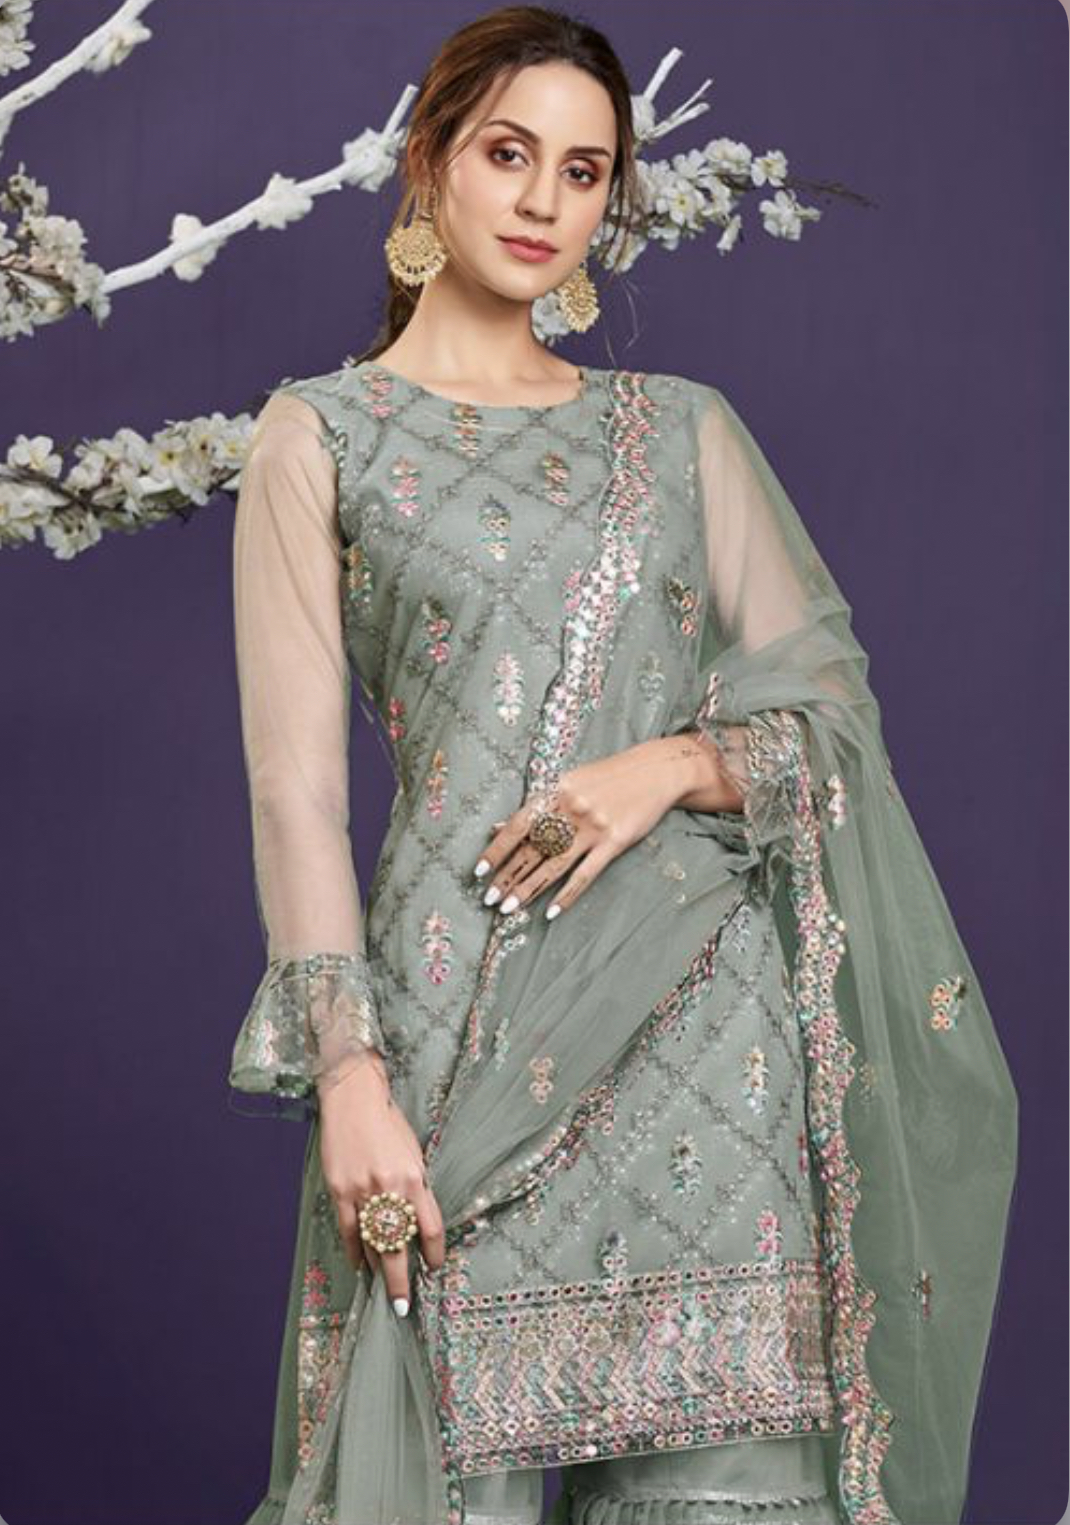 Green Net Embroidered Sharara Suit - Salwar Kameez Designer Collection